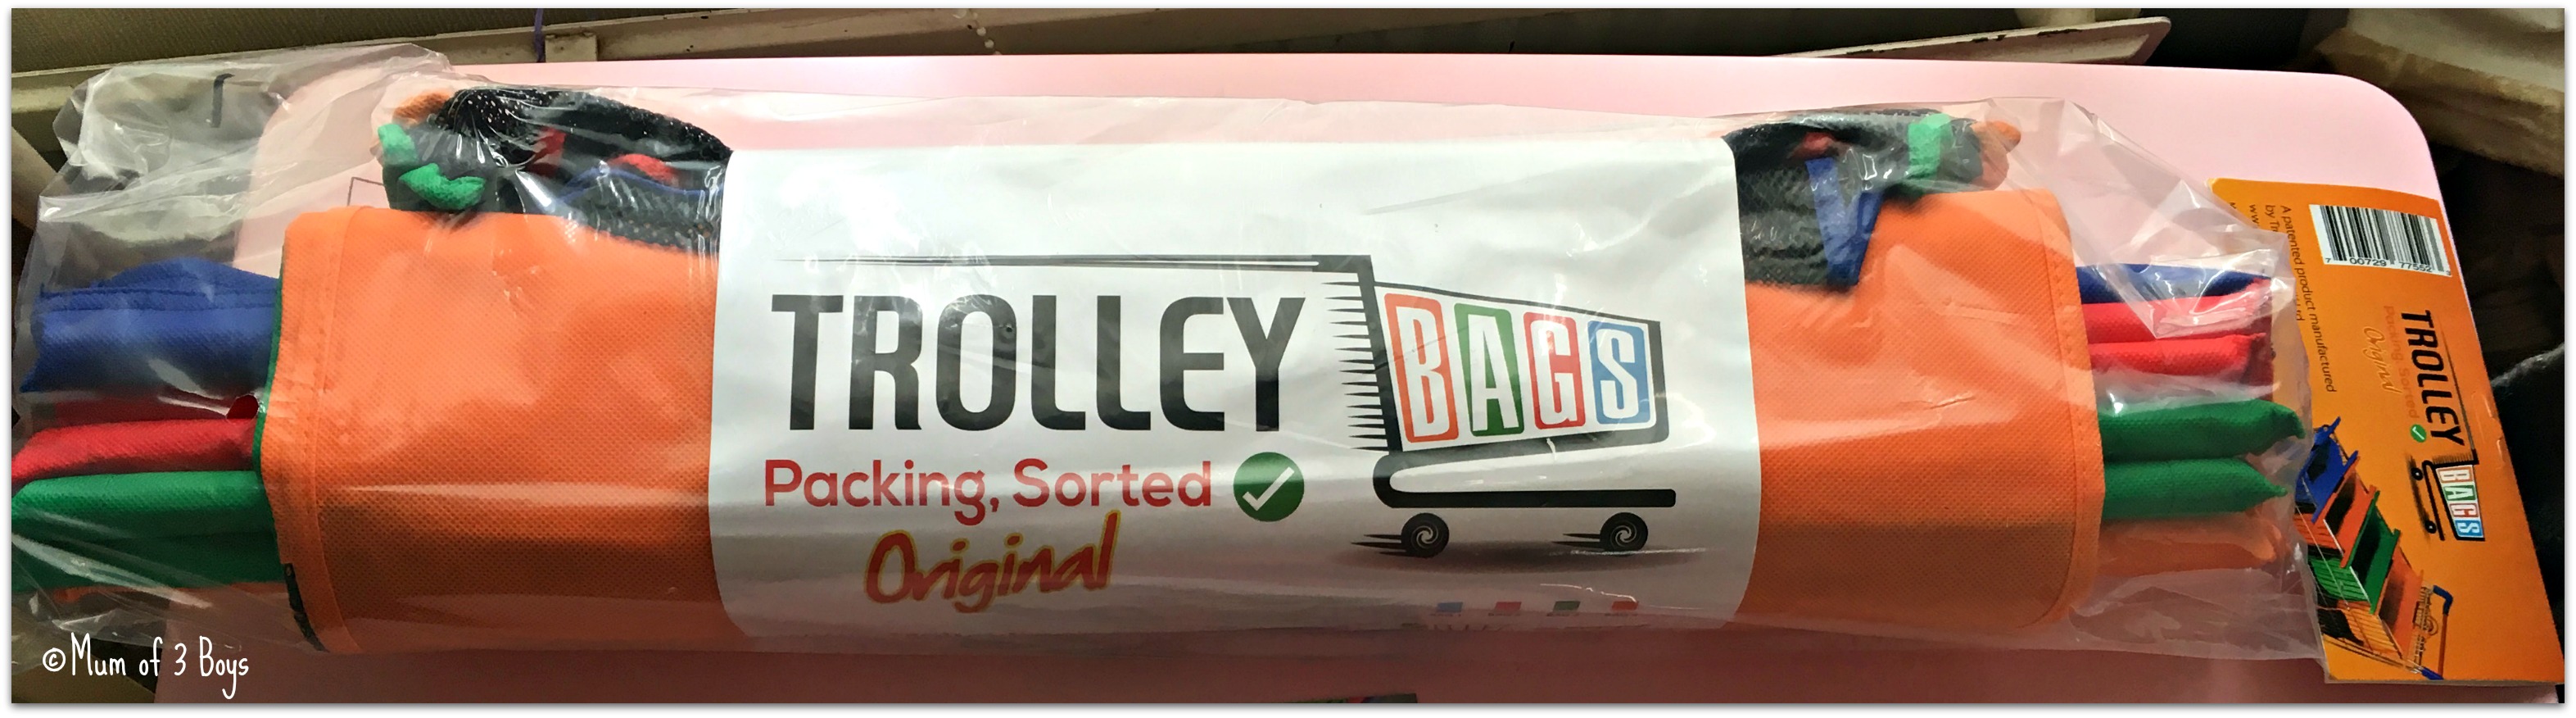 trolleybags packaging